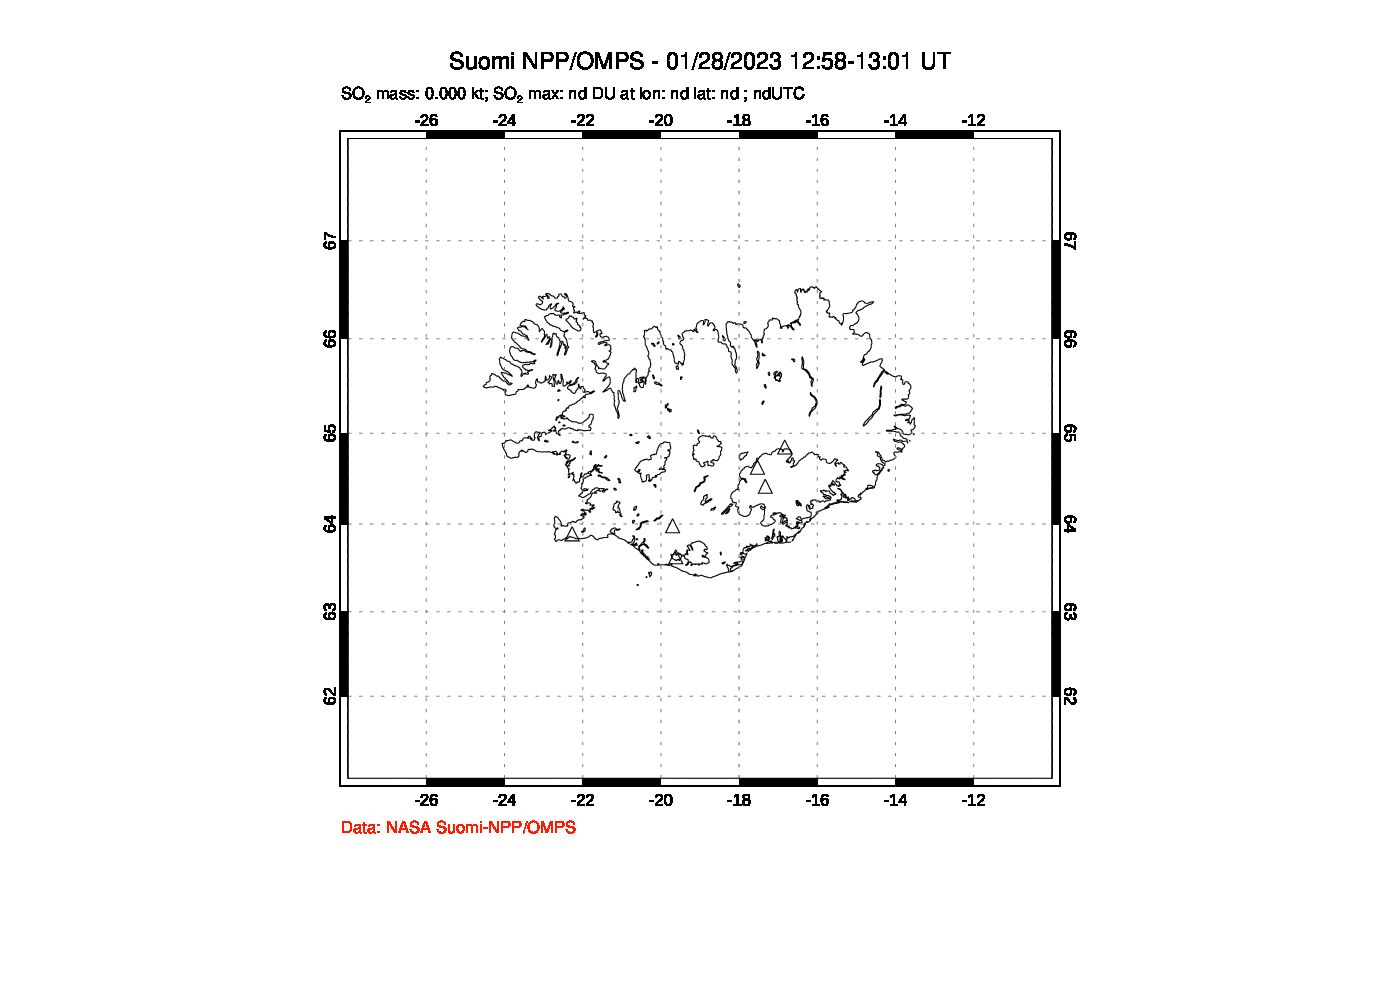 A sulfur dioxide image over Iceland on Jan 28, 2023.